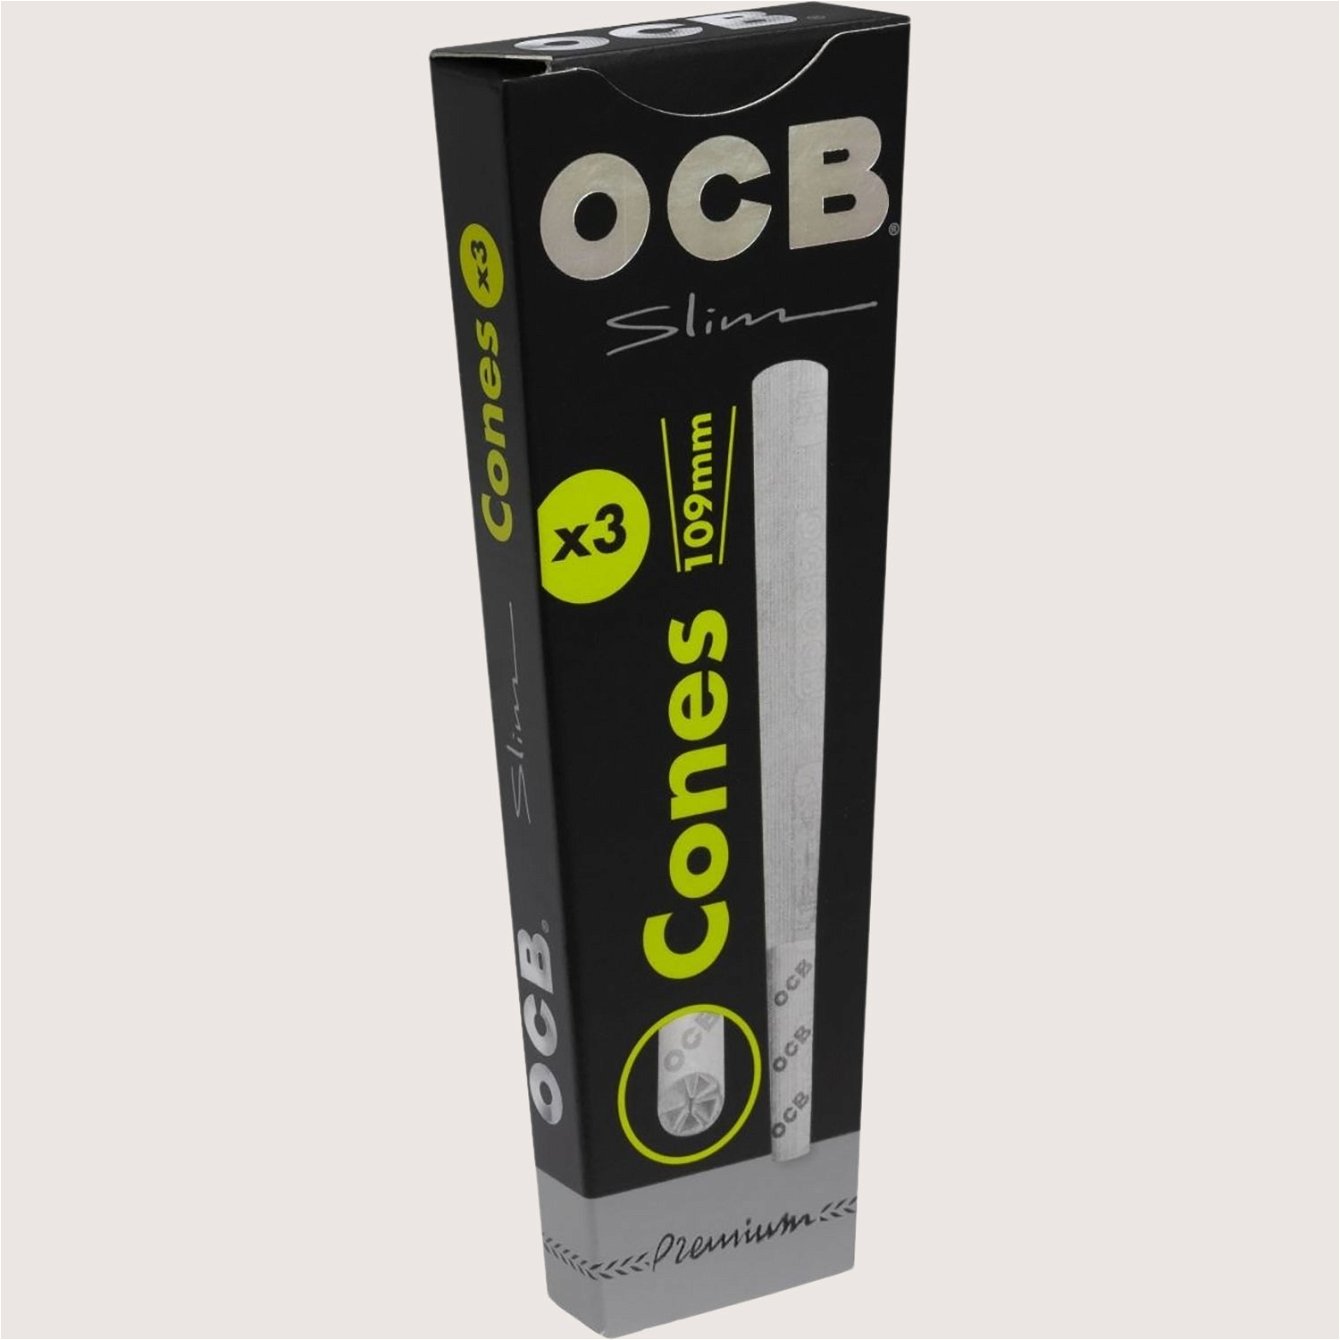 OCB Schwarz Premium 3 Cones